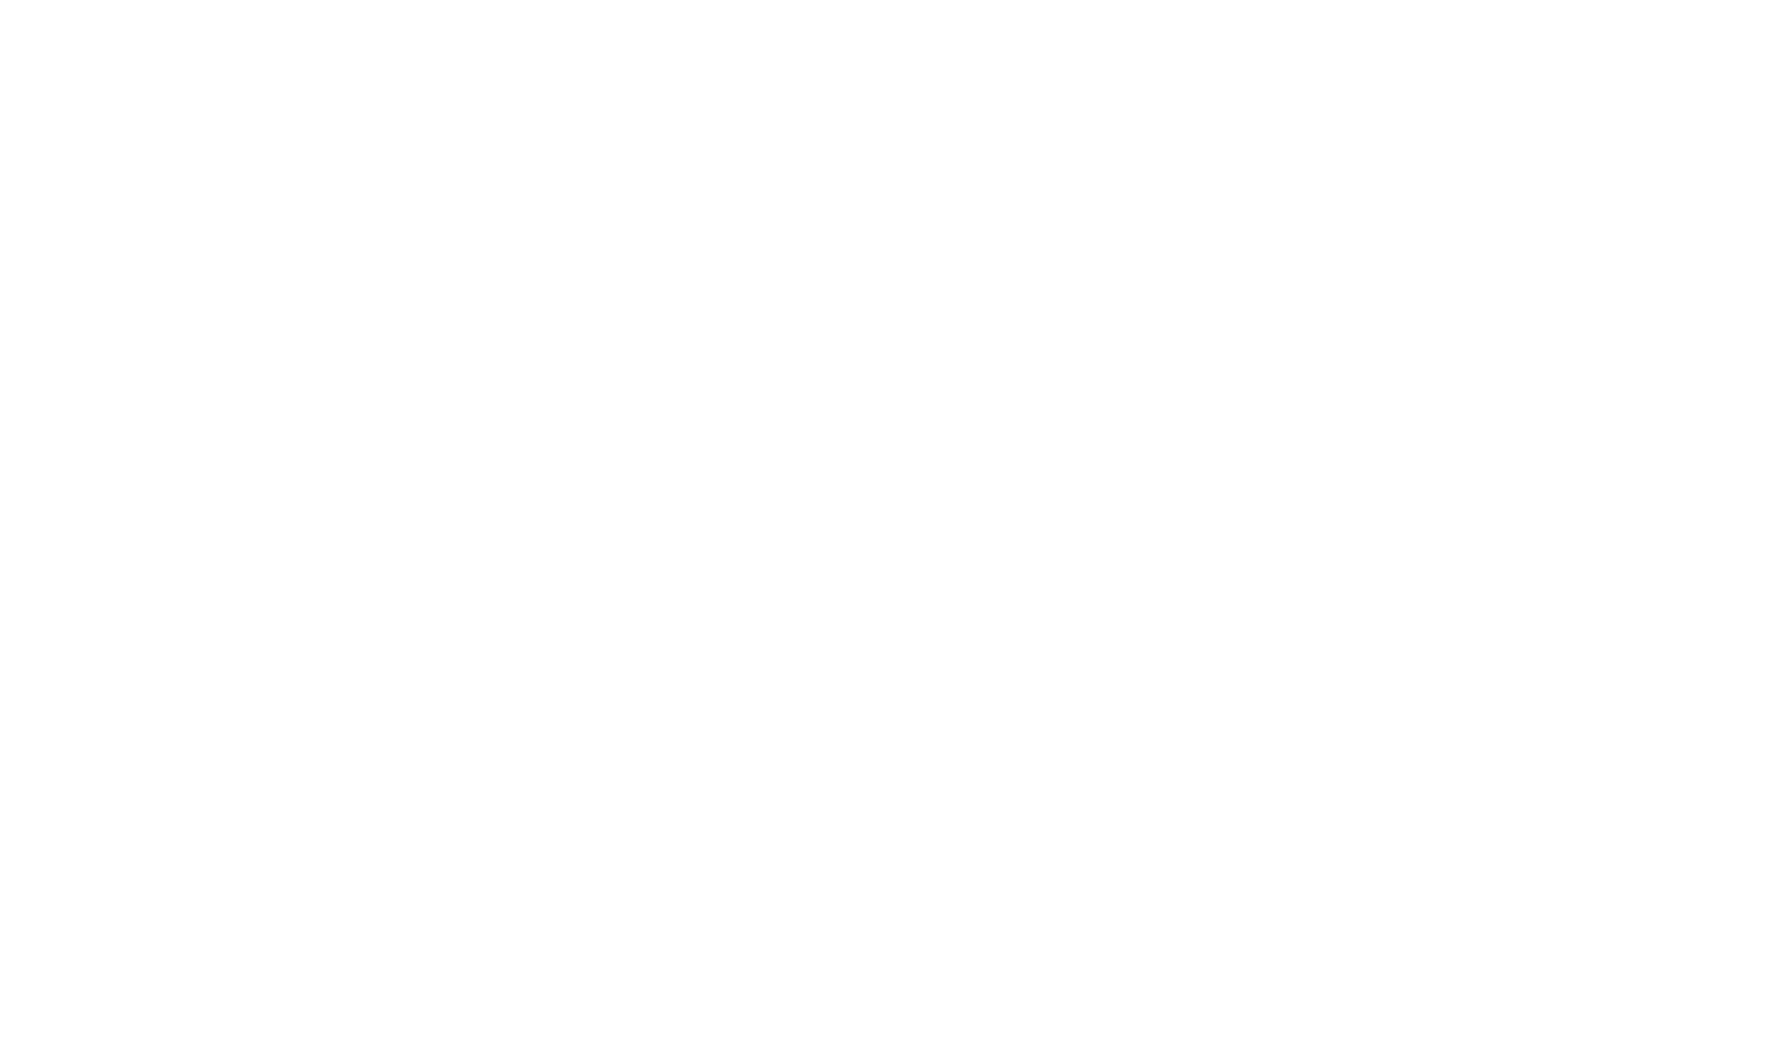 Capriccio 84 patisserie